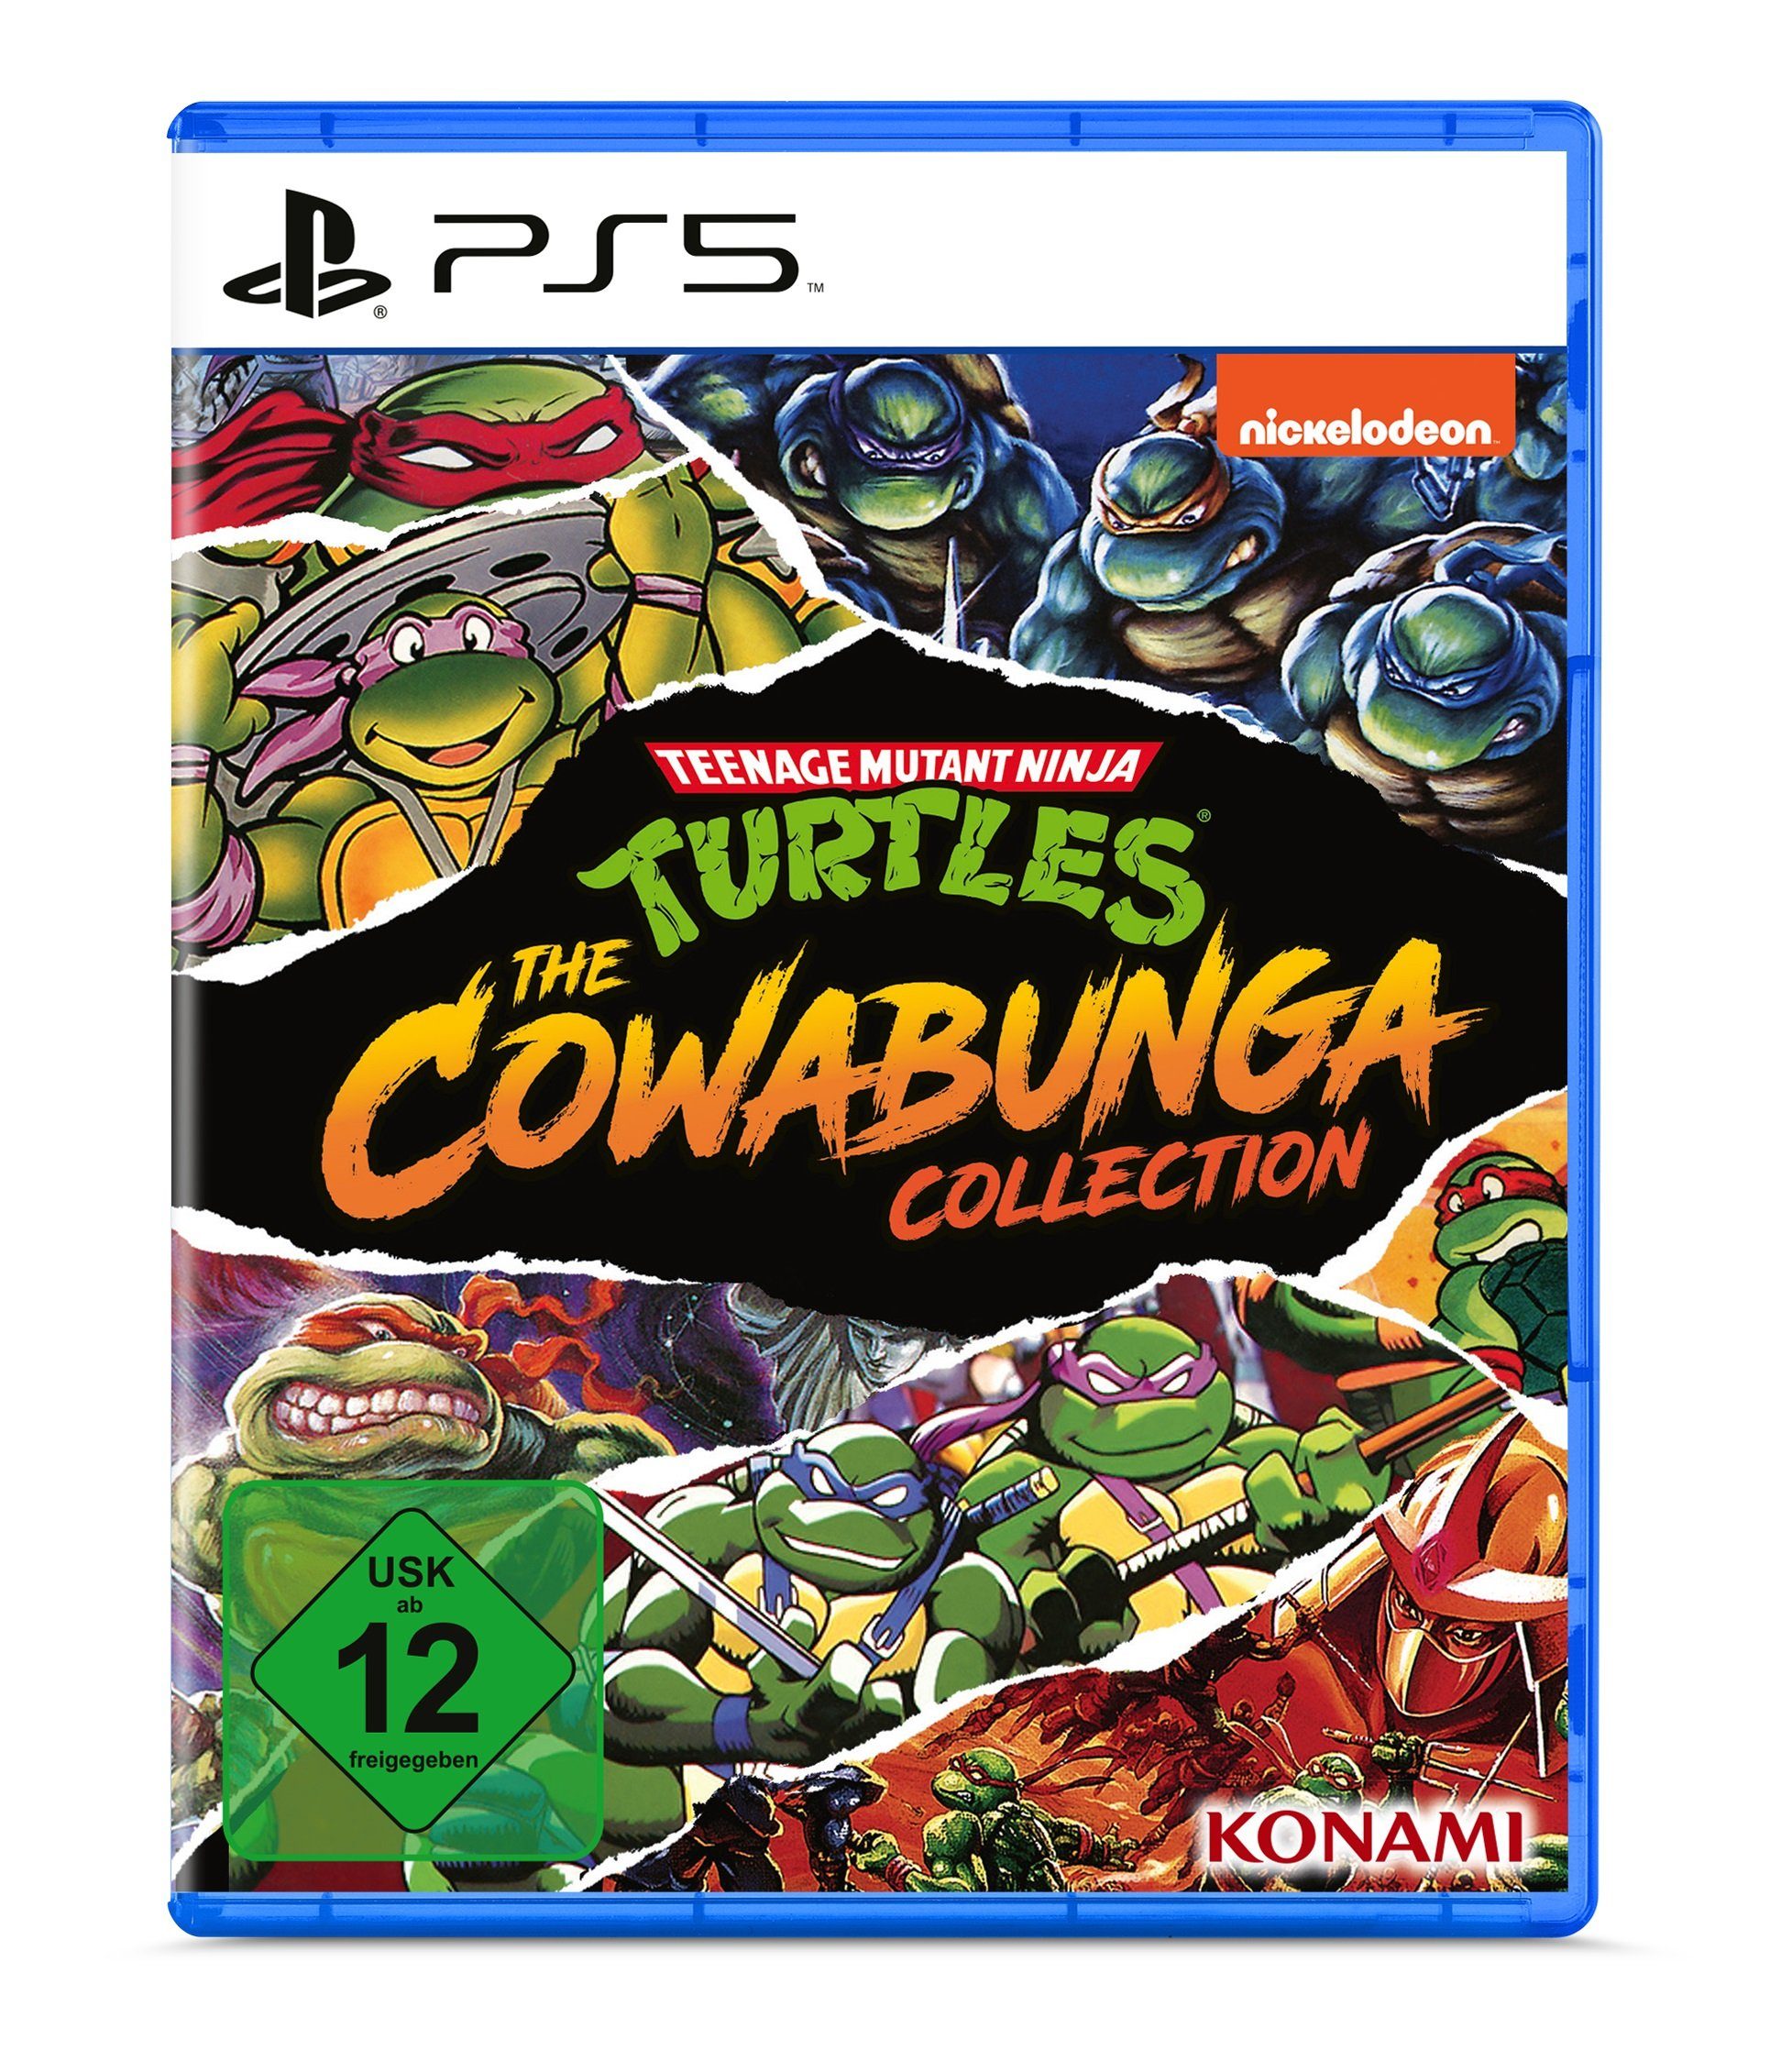 Ninja Cowabunga Teenage The Turtles - PlayStation Konami Mutant Collection 5